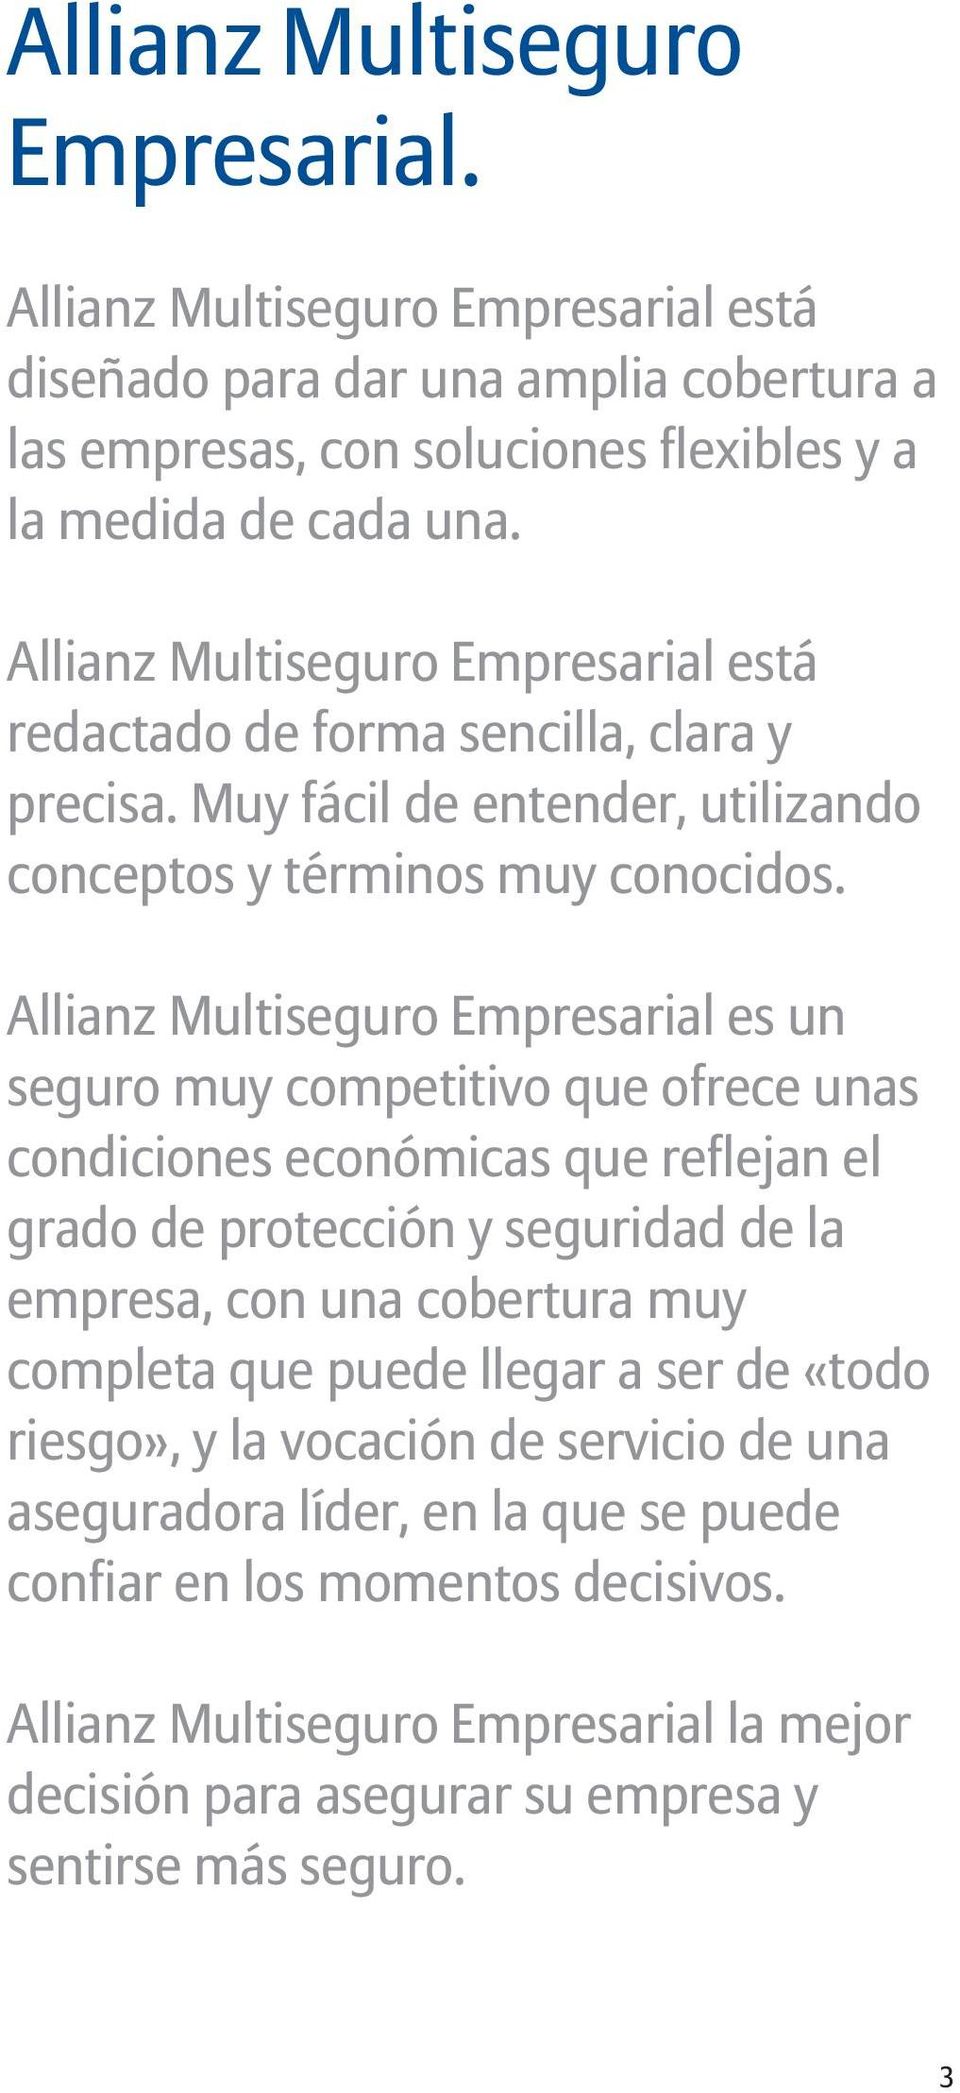 Allianz Multiseguro Empresarial es un seguro muy competitivo que ofrece unas condiciones económicas que reflejan el grado de protección y seguridad de la empresa, con una cobertura muy